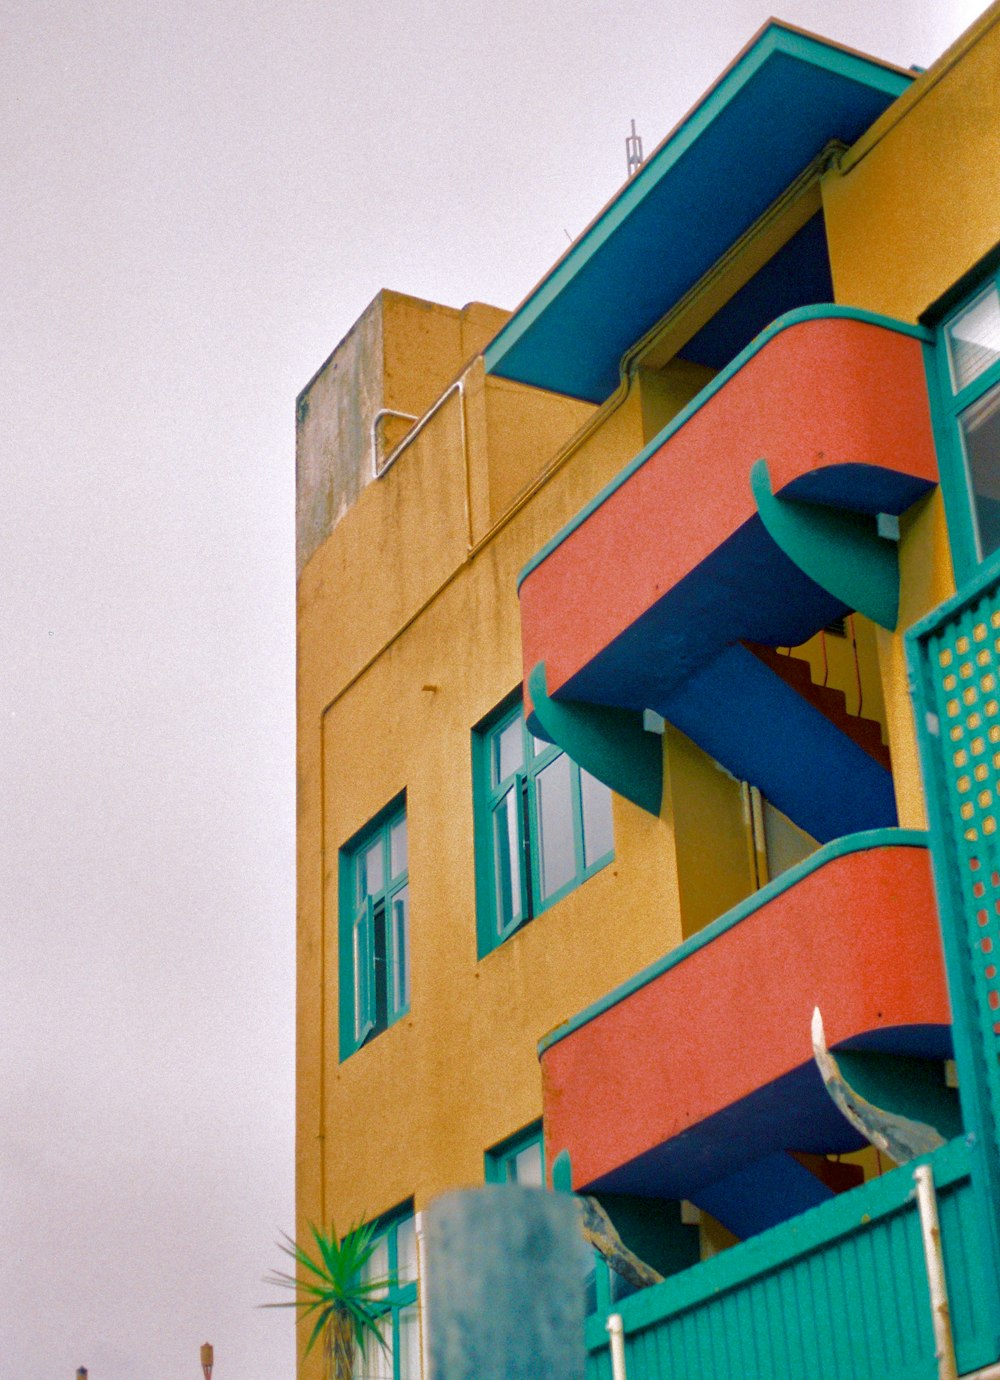 Bâtiment de 4 étages orange, bleu et jaune